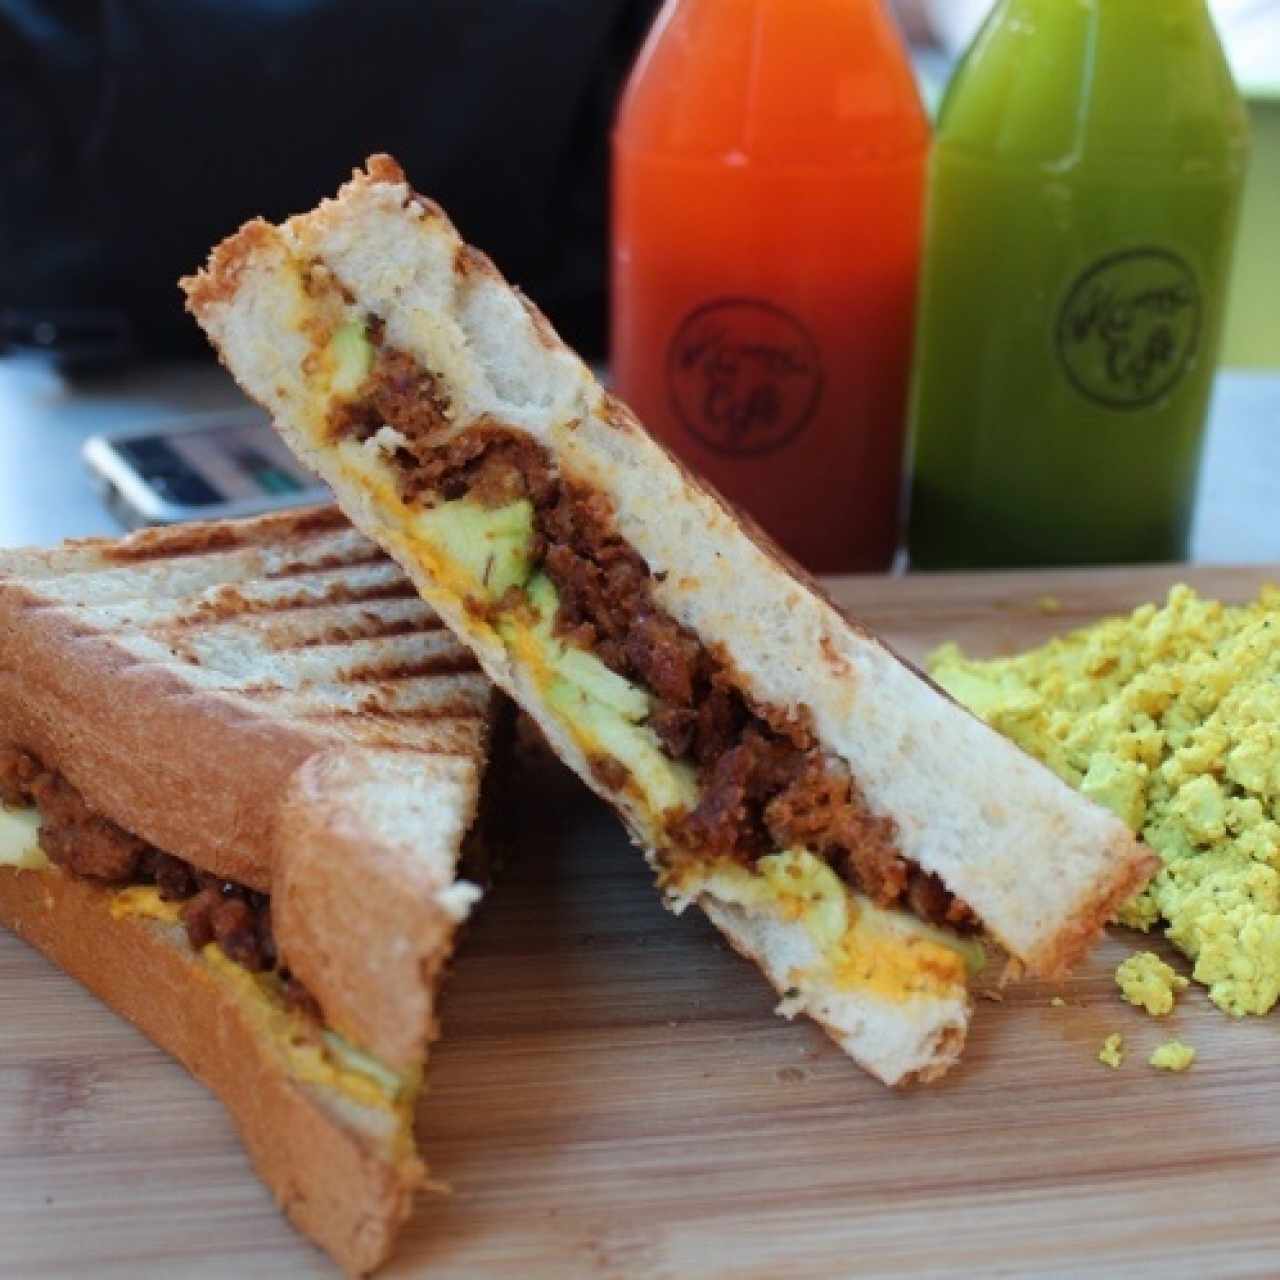 Sandwich de Desayuno y tofu revuelto